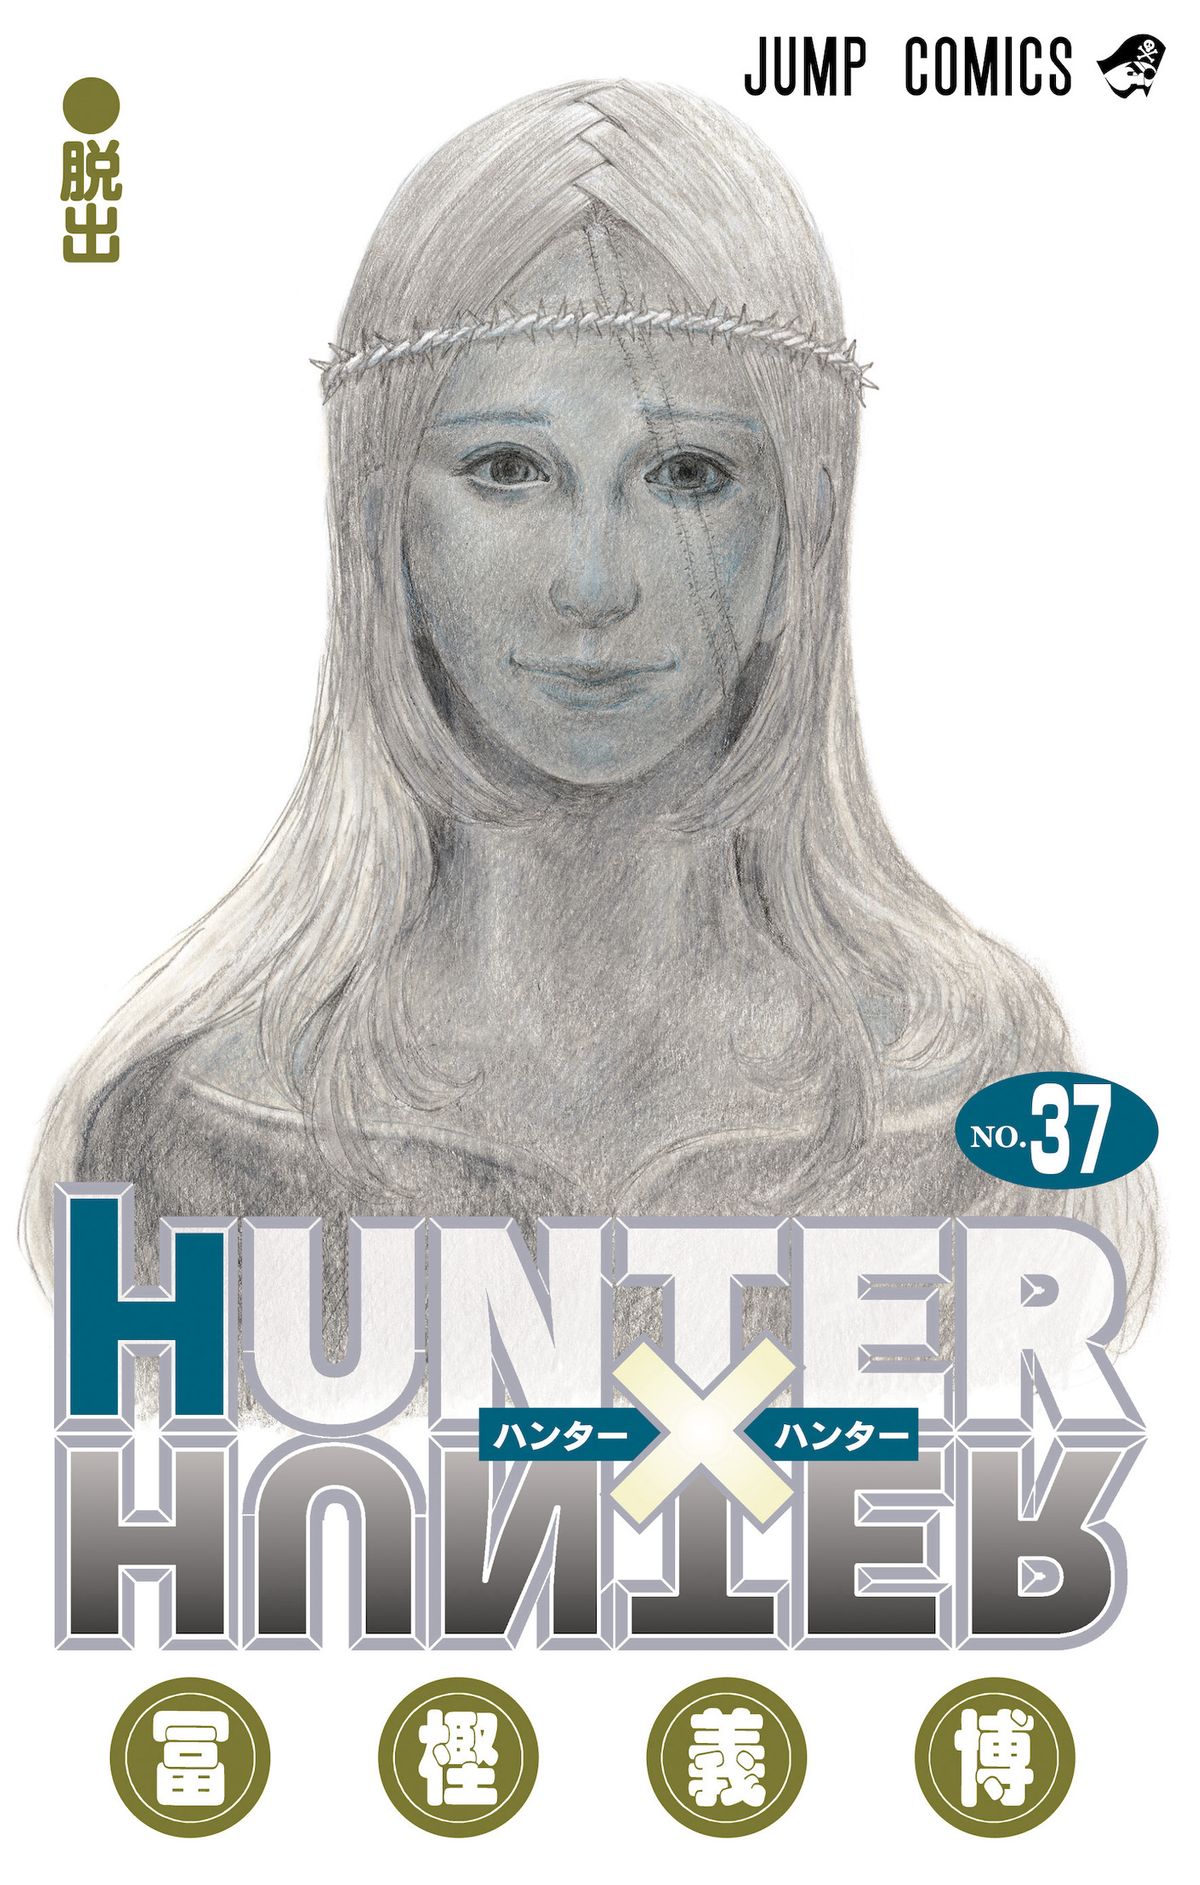 冨樫義博『HUNTER×HUNTER』 約3年11か月ぶりに連載再開へ  「これで仕事頑張れる」SNS上でファン喜び